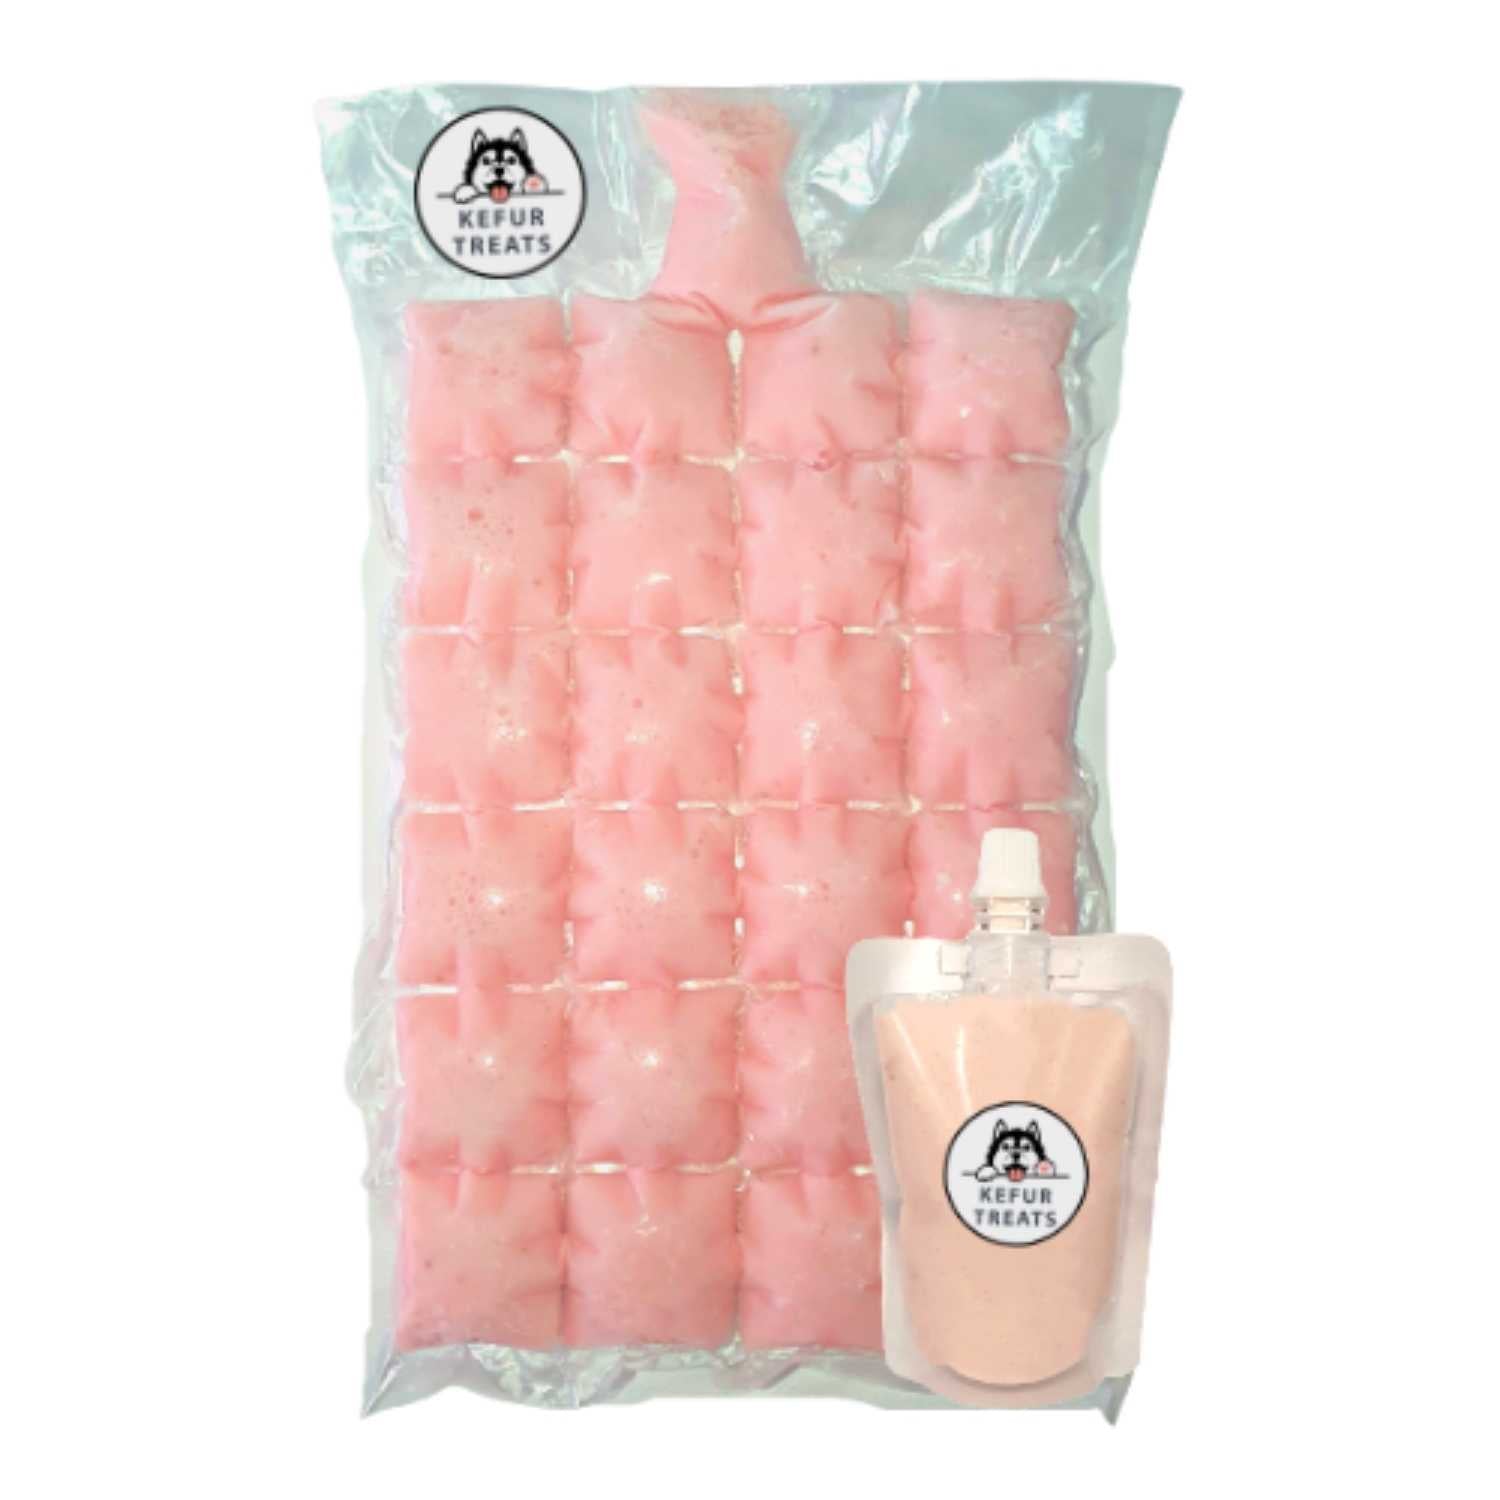 Milk Kefir Kefur Treats Starter Pack Liquid Pouch 100ml Frozen Pack 24 cubes Strawberry